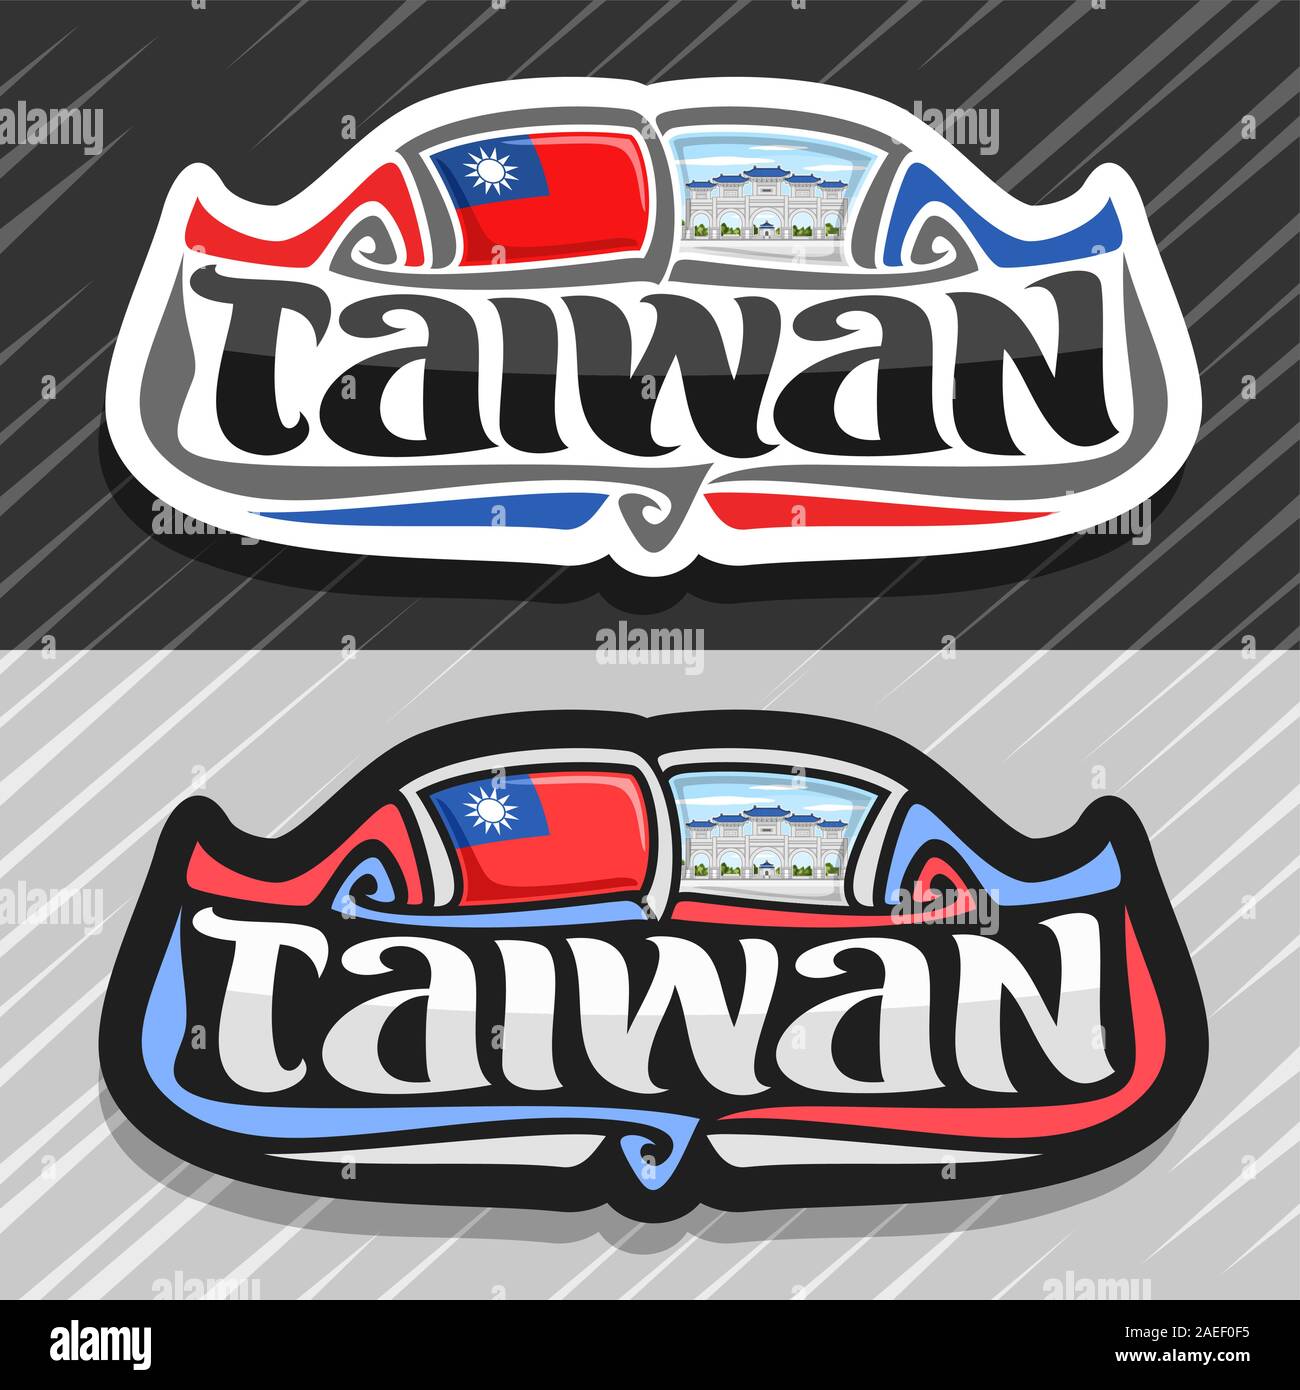 Logo Vector pour Taiwan, pays aimant frigo avec drapeau de l'État taiwanais d'origine, caractère brosse pour mot taiwan et symbole national taiwanais - Chian Illustration de Vecteur